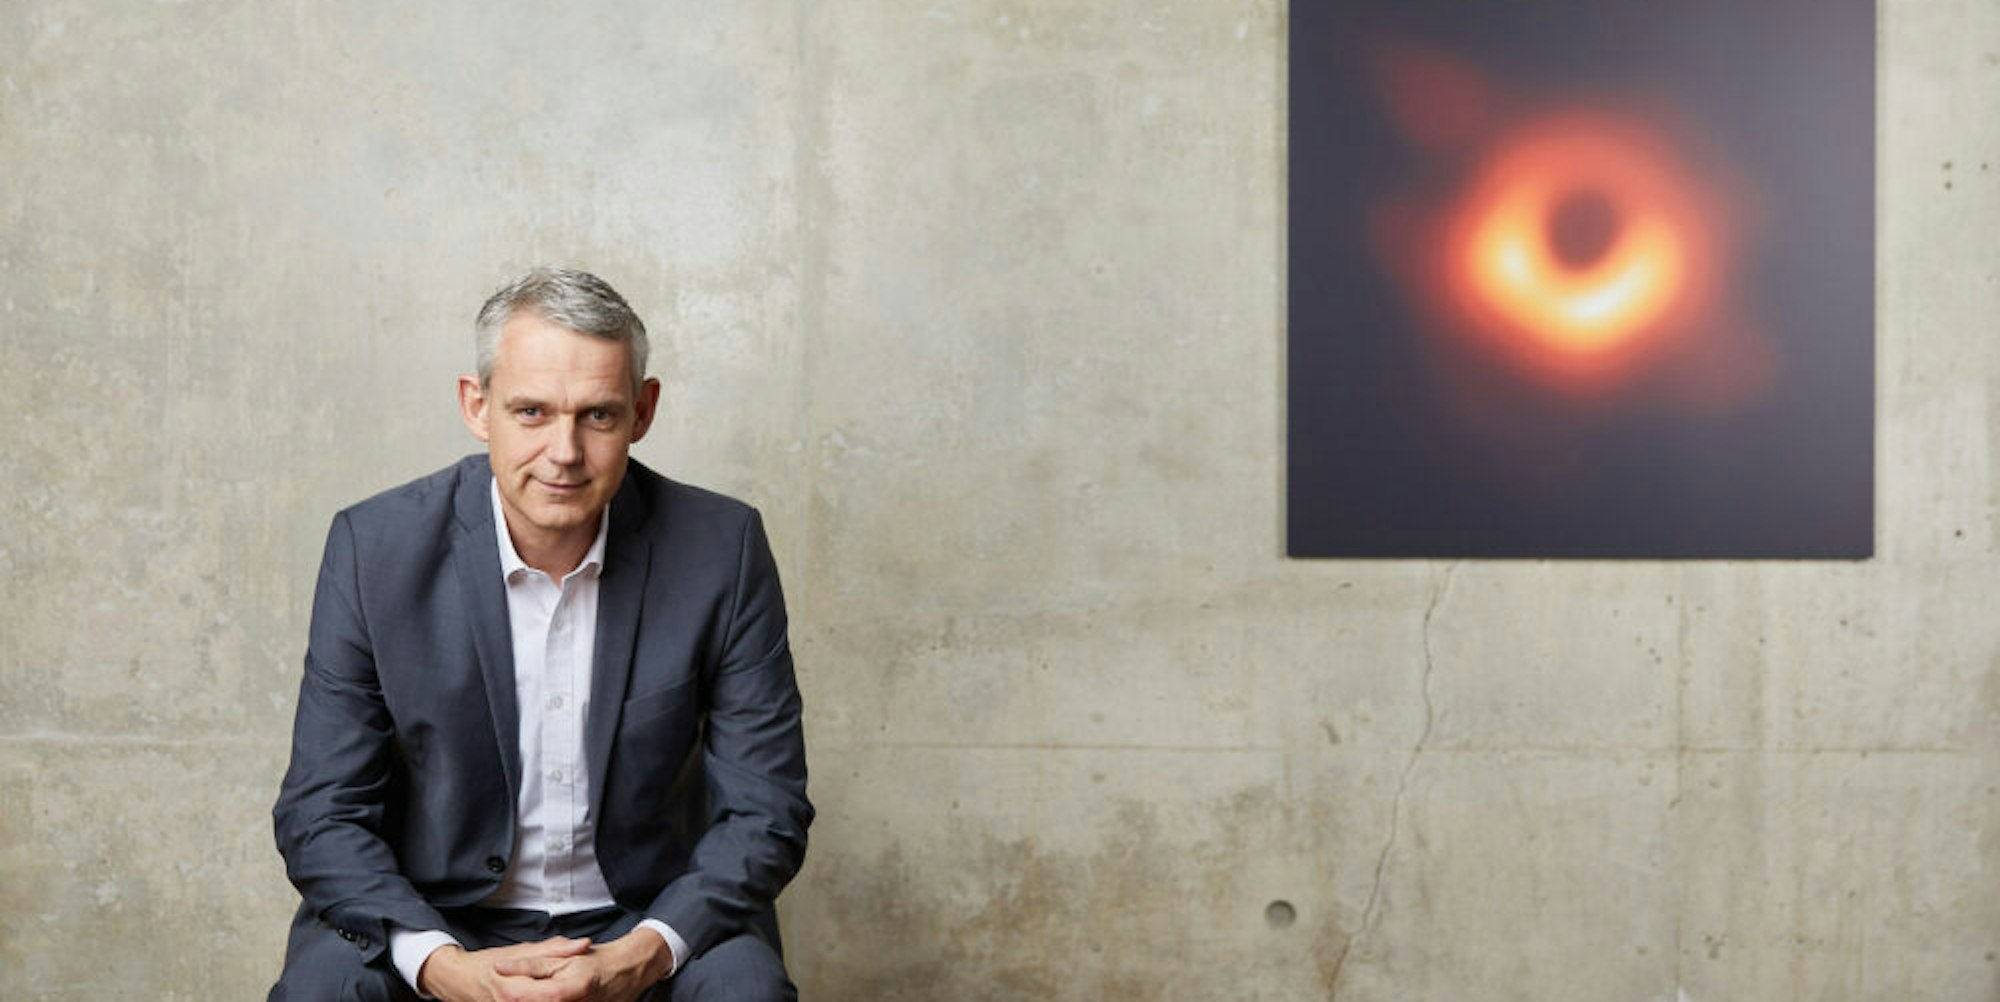 Der in Frechen lebende Astronom Heino Falcke vor dem Bild eines Schwarzen Lochs, das 2019 für eine Weltsensation sorgte.